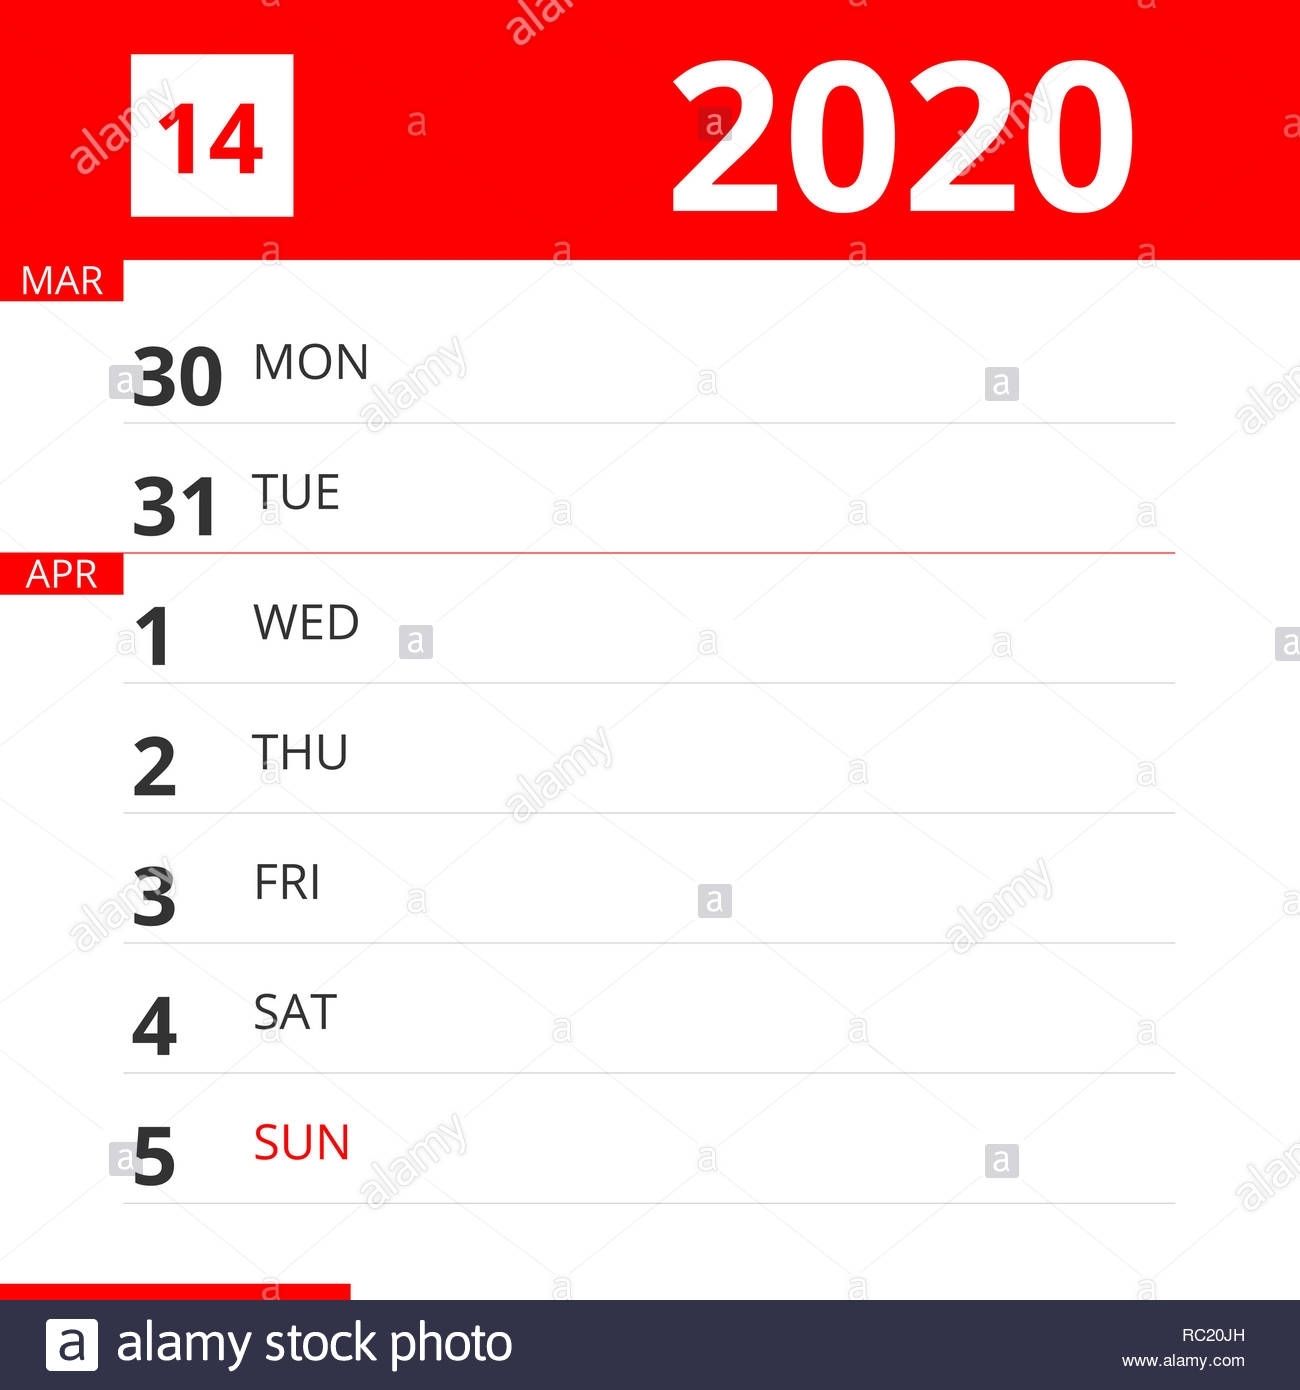 Calendar Planner For Week 14 In 2020, Ends April 5, 2020